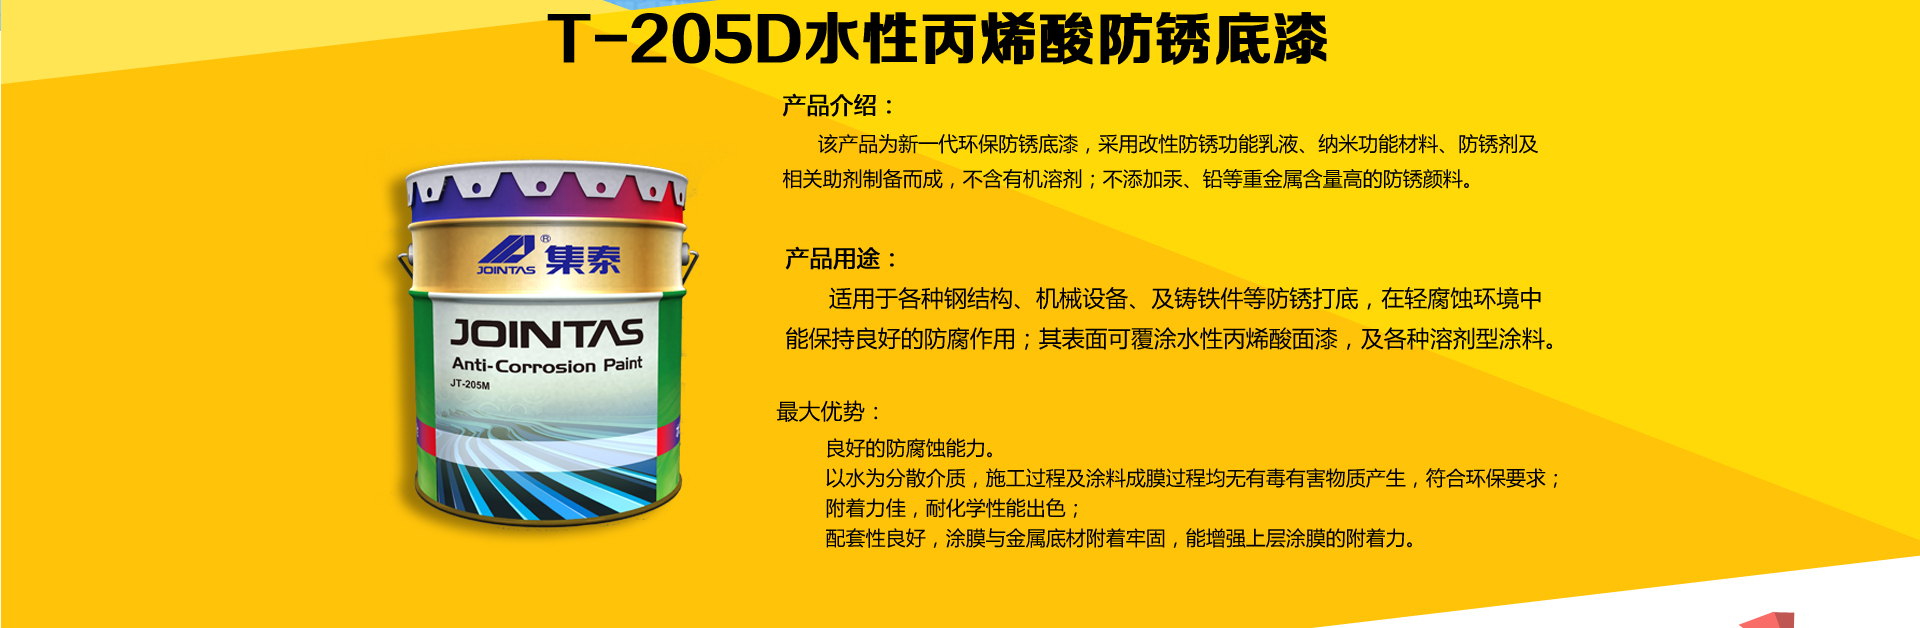 广州集泰化工股份有限公司---国内水性涂料行业领导者